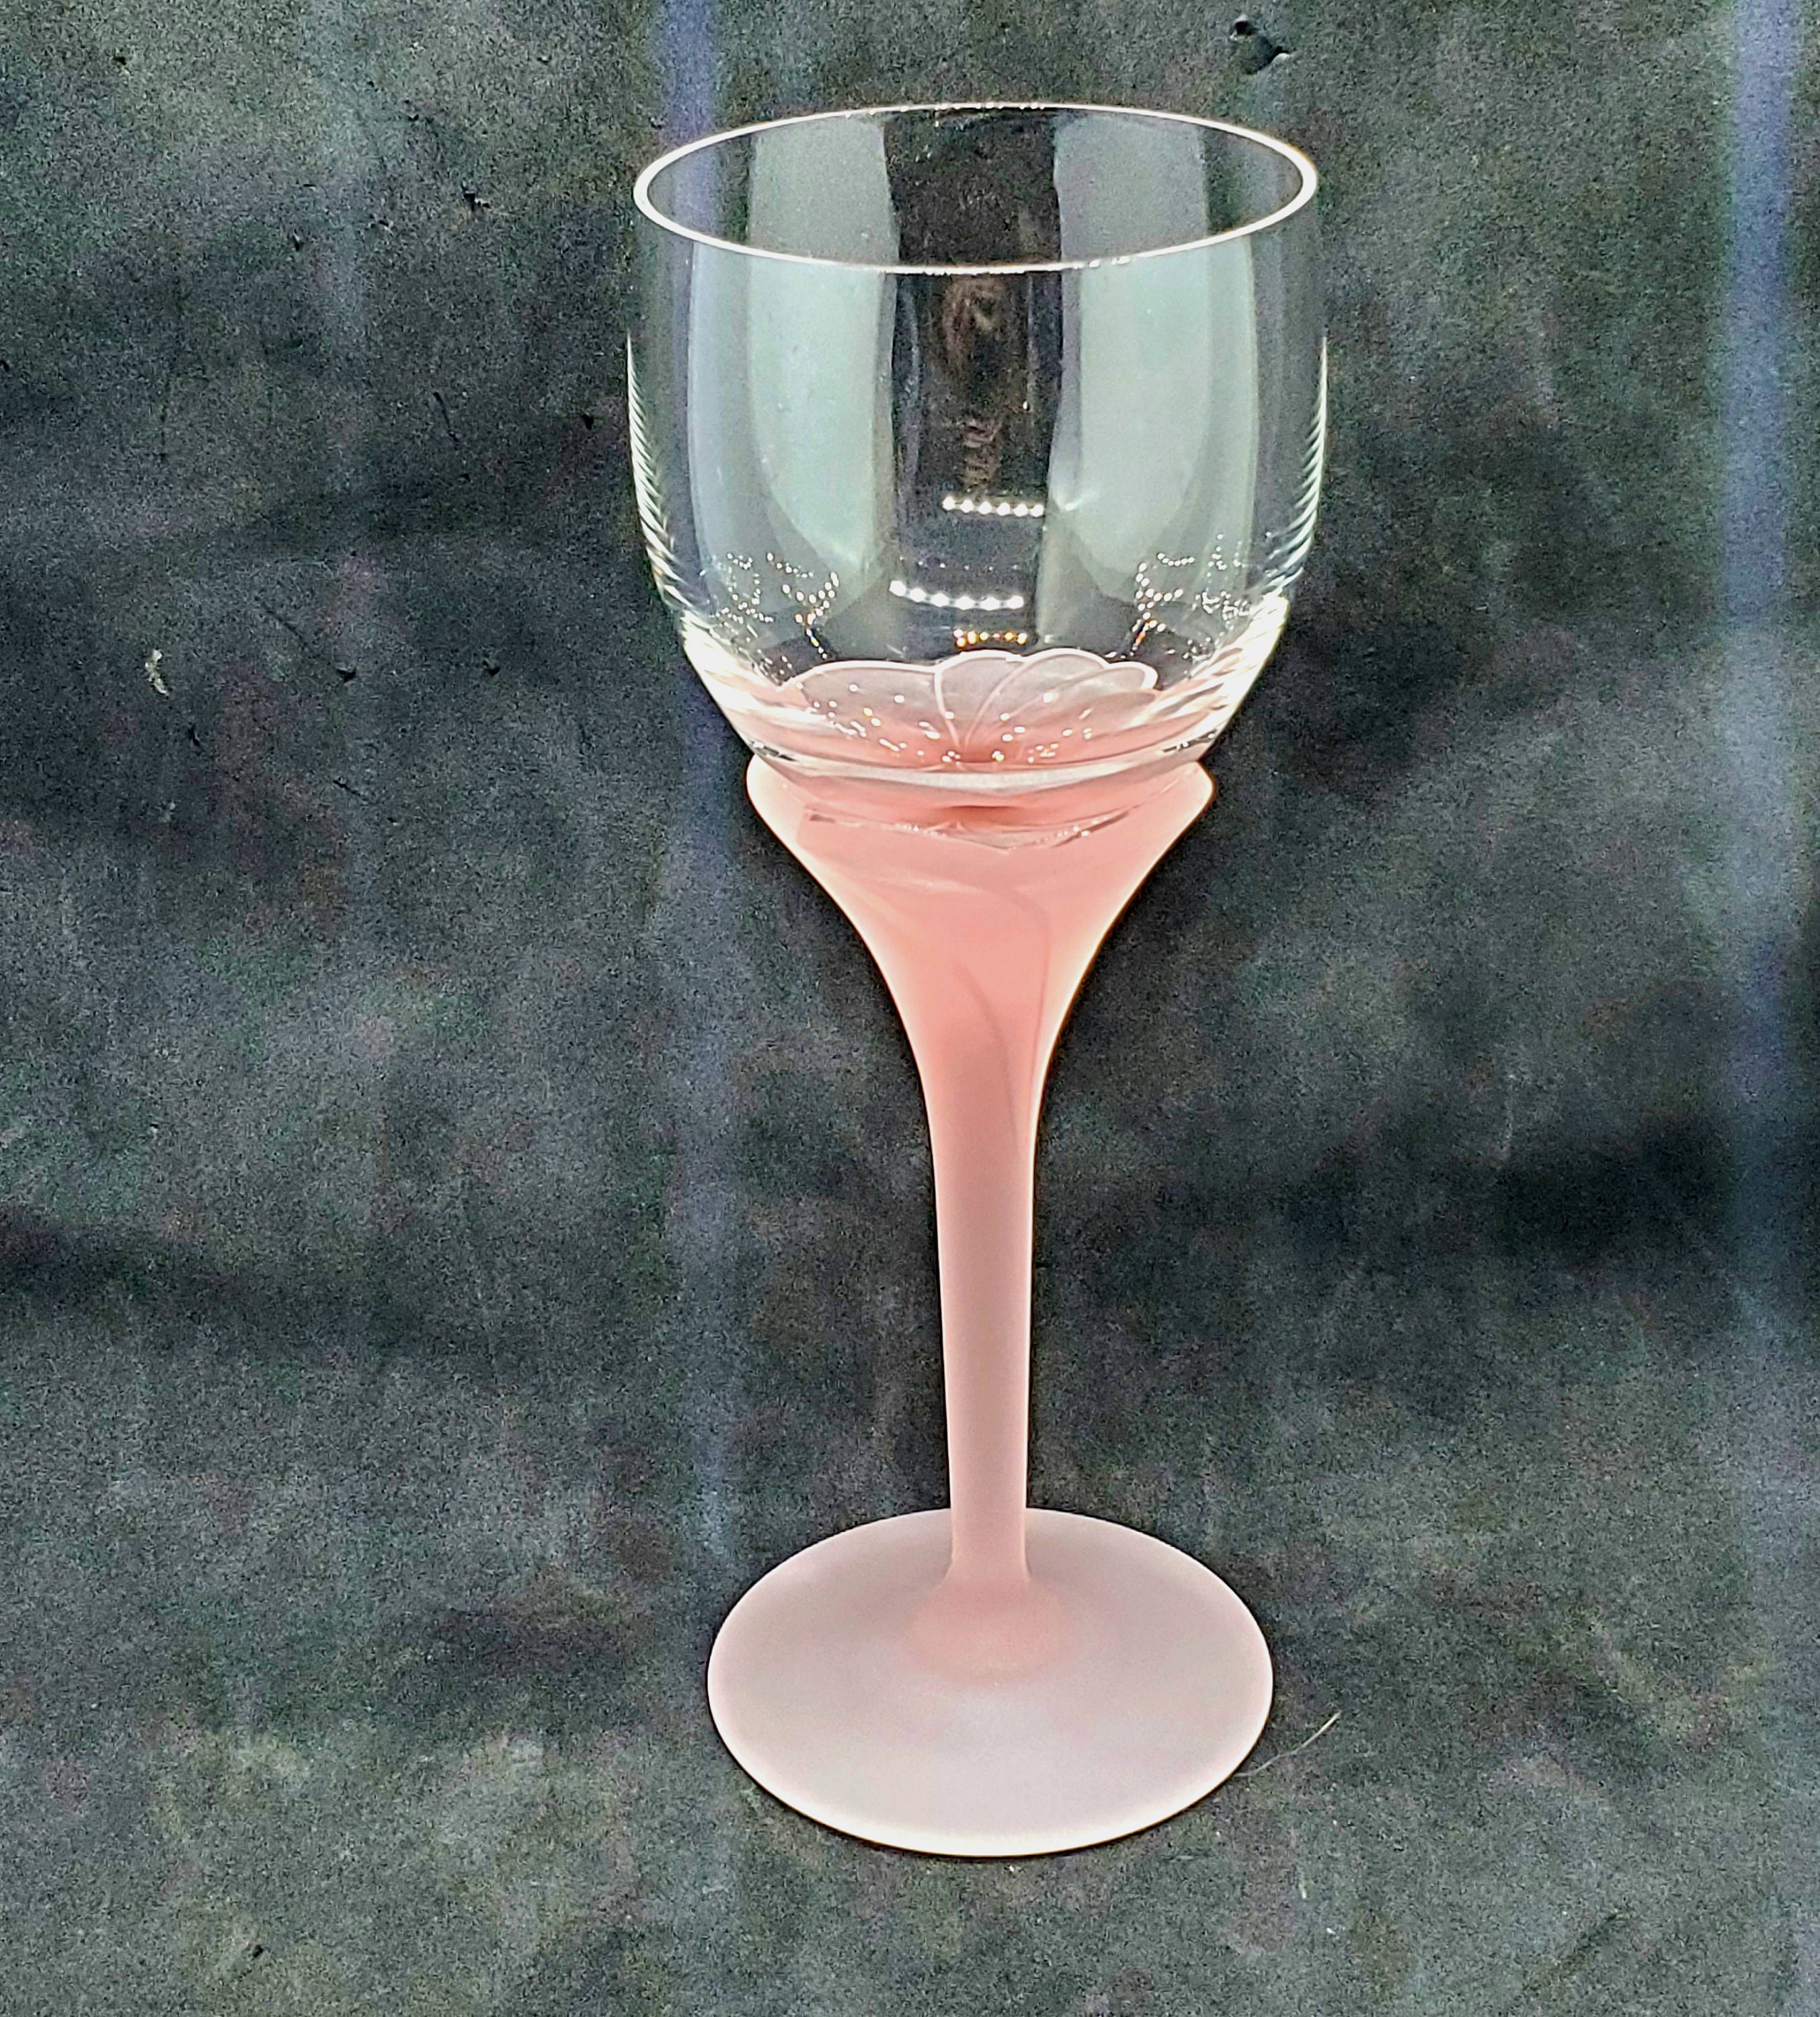 Set of 4 four Vintage PINK Stemmed WINE Glasses by Cris 